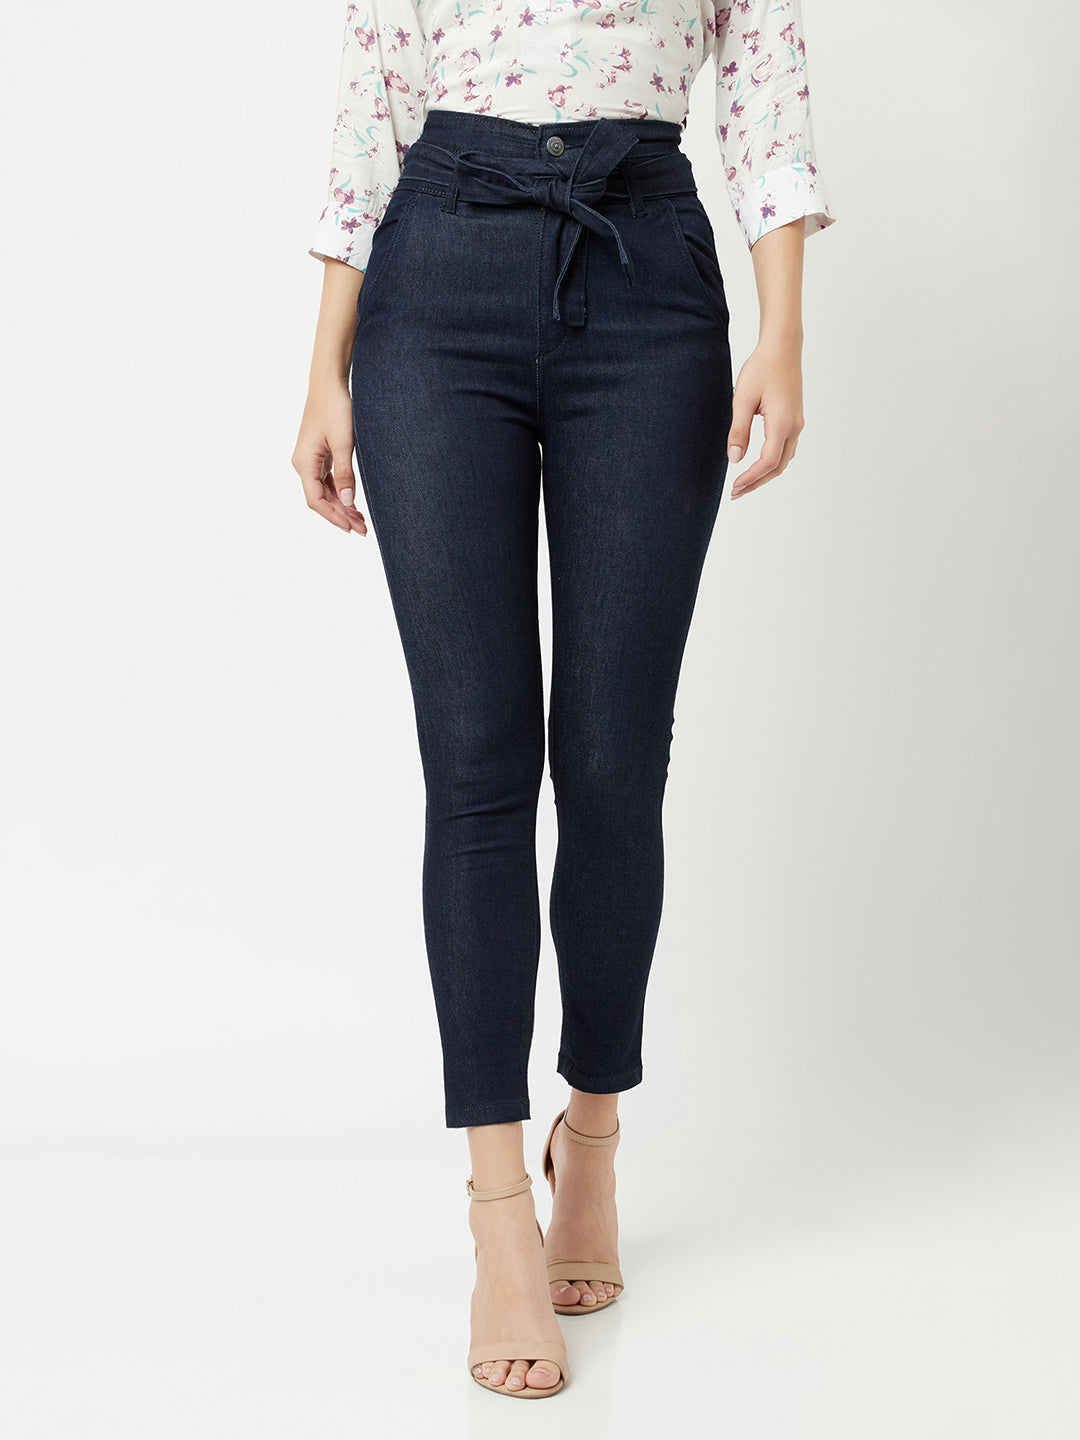 Navy Blue High waist Jeans With Belt-Women Jeans-Crimsoune Club